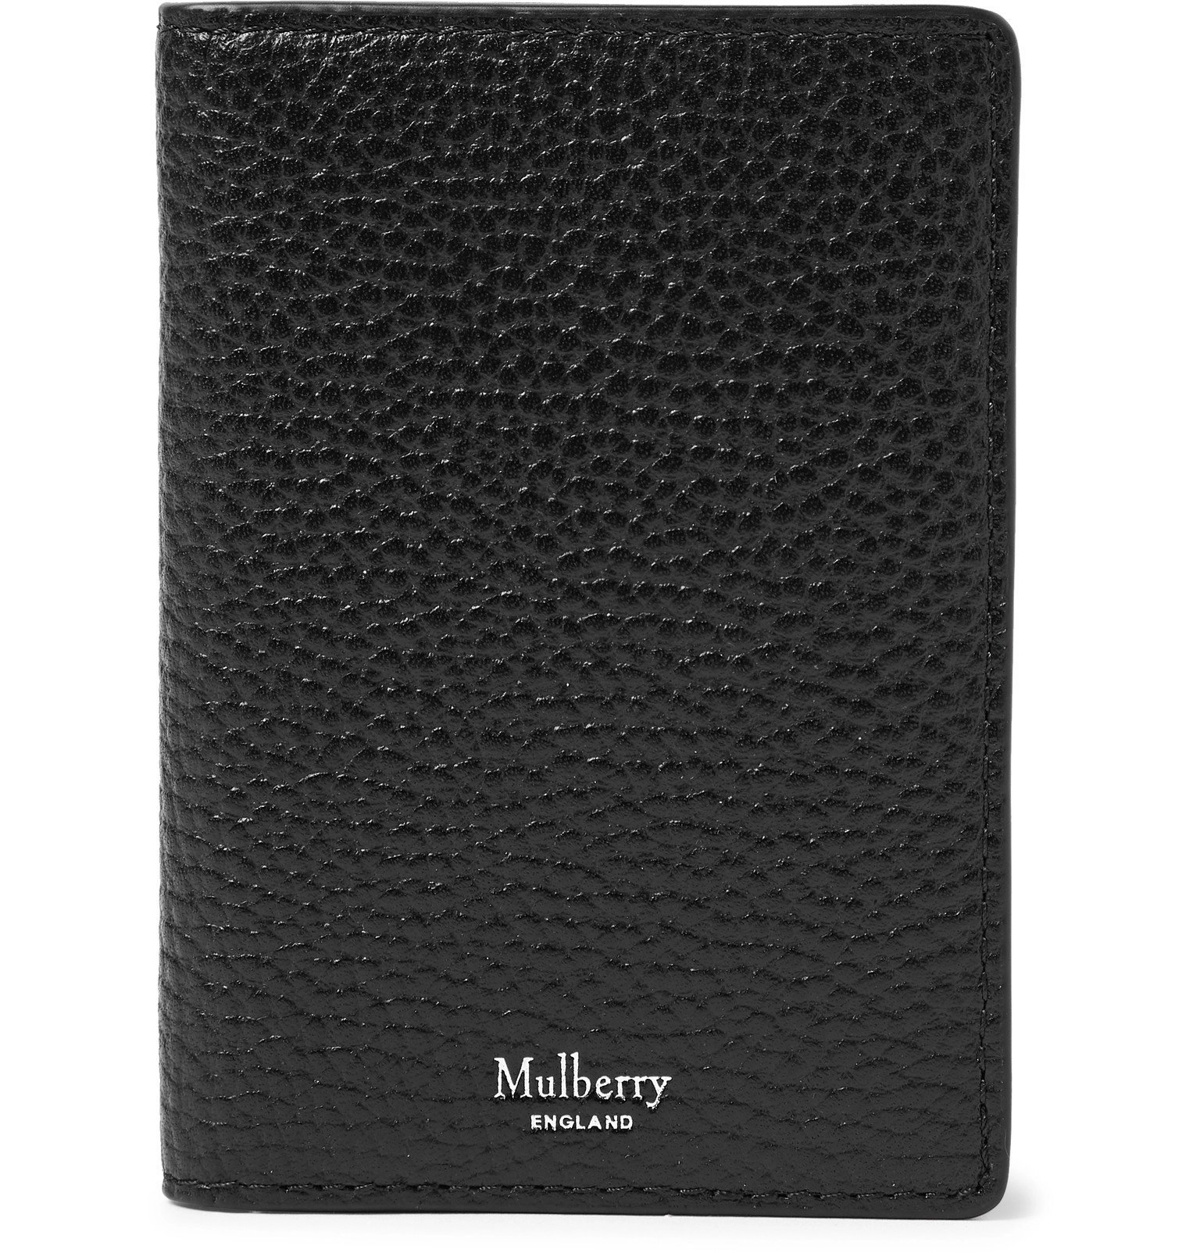 Mulberry - Full-Grain Leather Billfold Cardholder - Black Mulberry